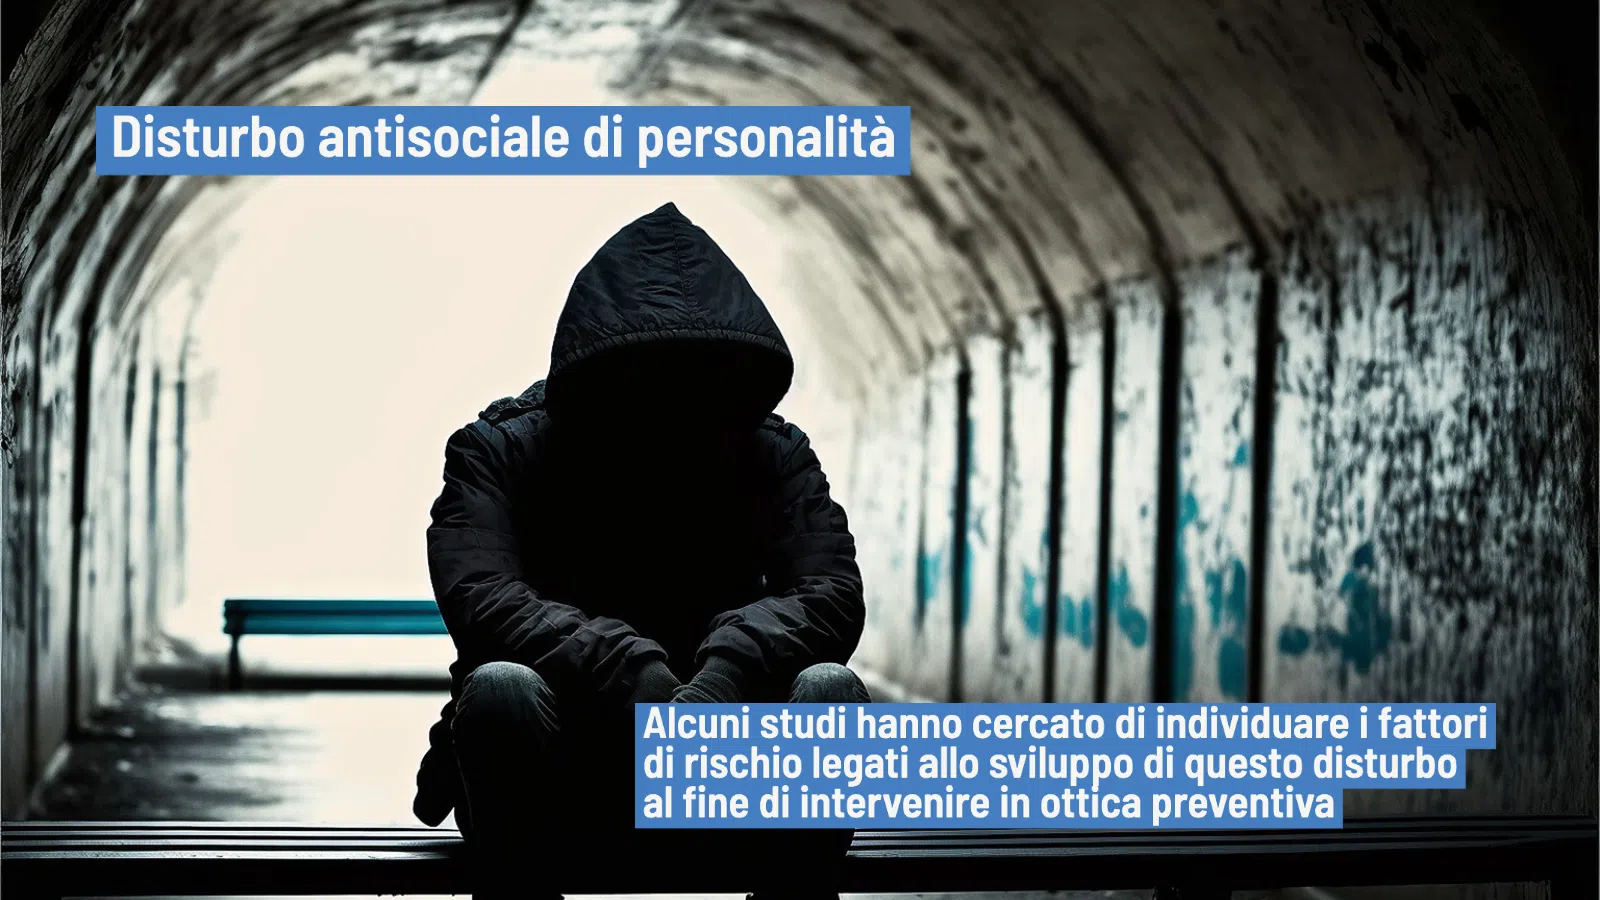 Disturbo antisociale di personalità: eziologia e caratteristiche